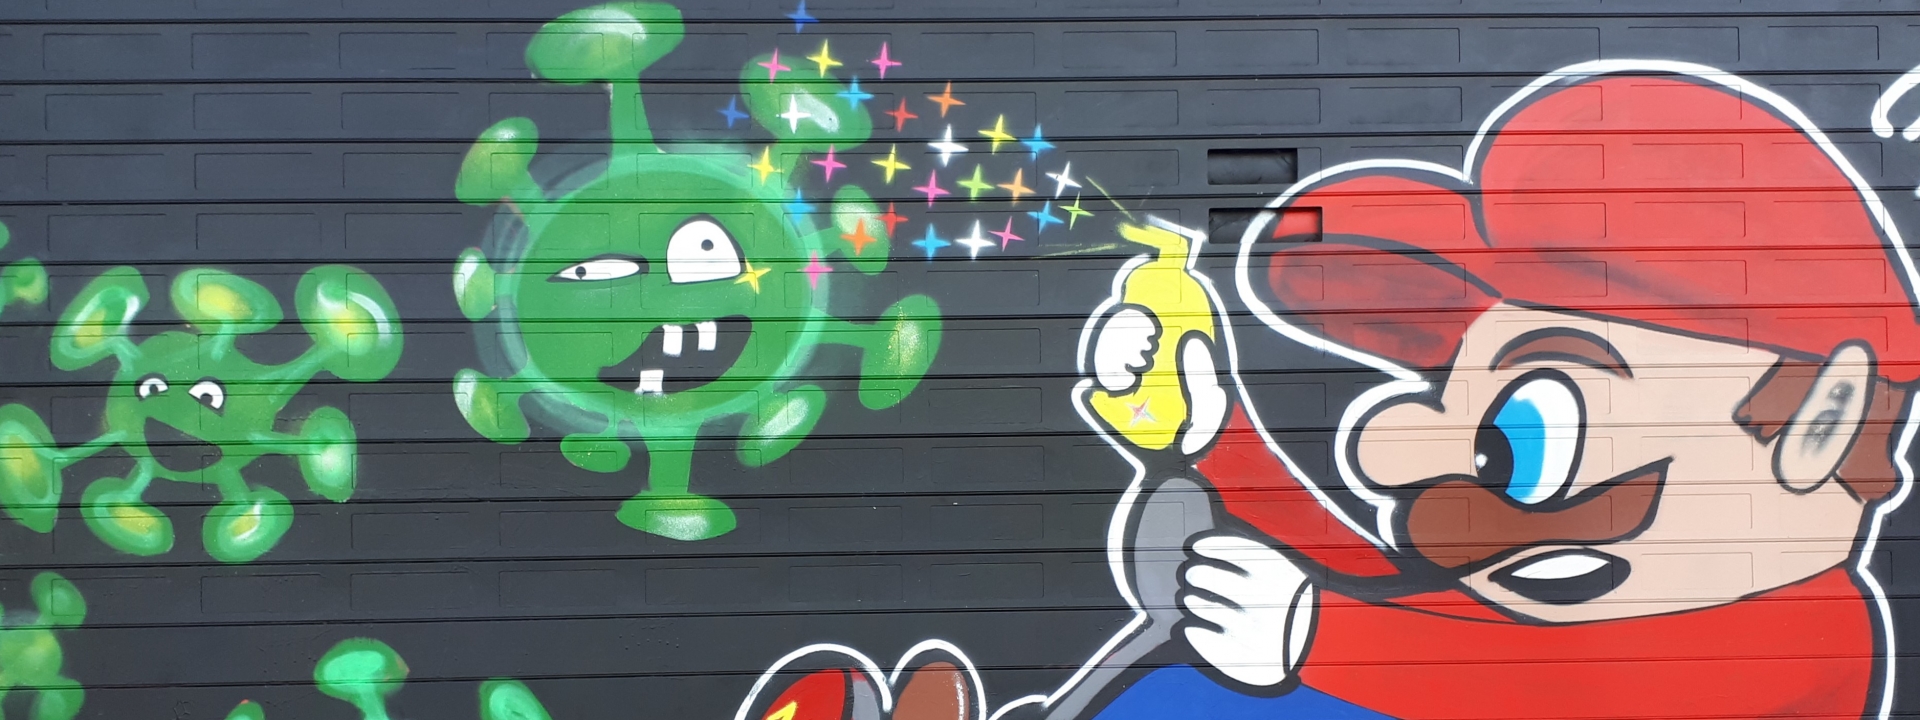 Foto: Graffiti auf einem Garagentor: Super Mario sprüht bunte Sternchen auf Corona Viren mit Gesichtern